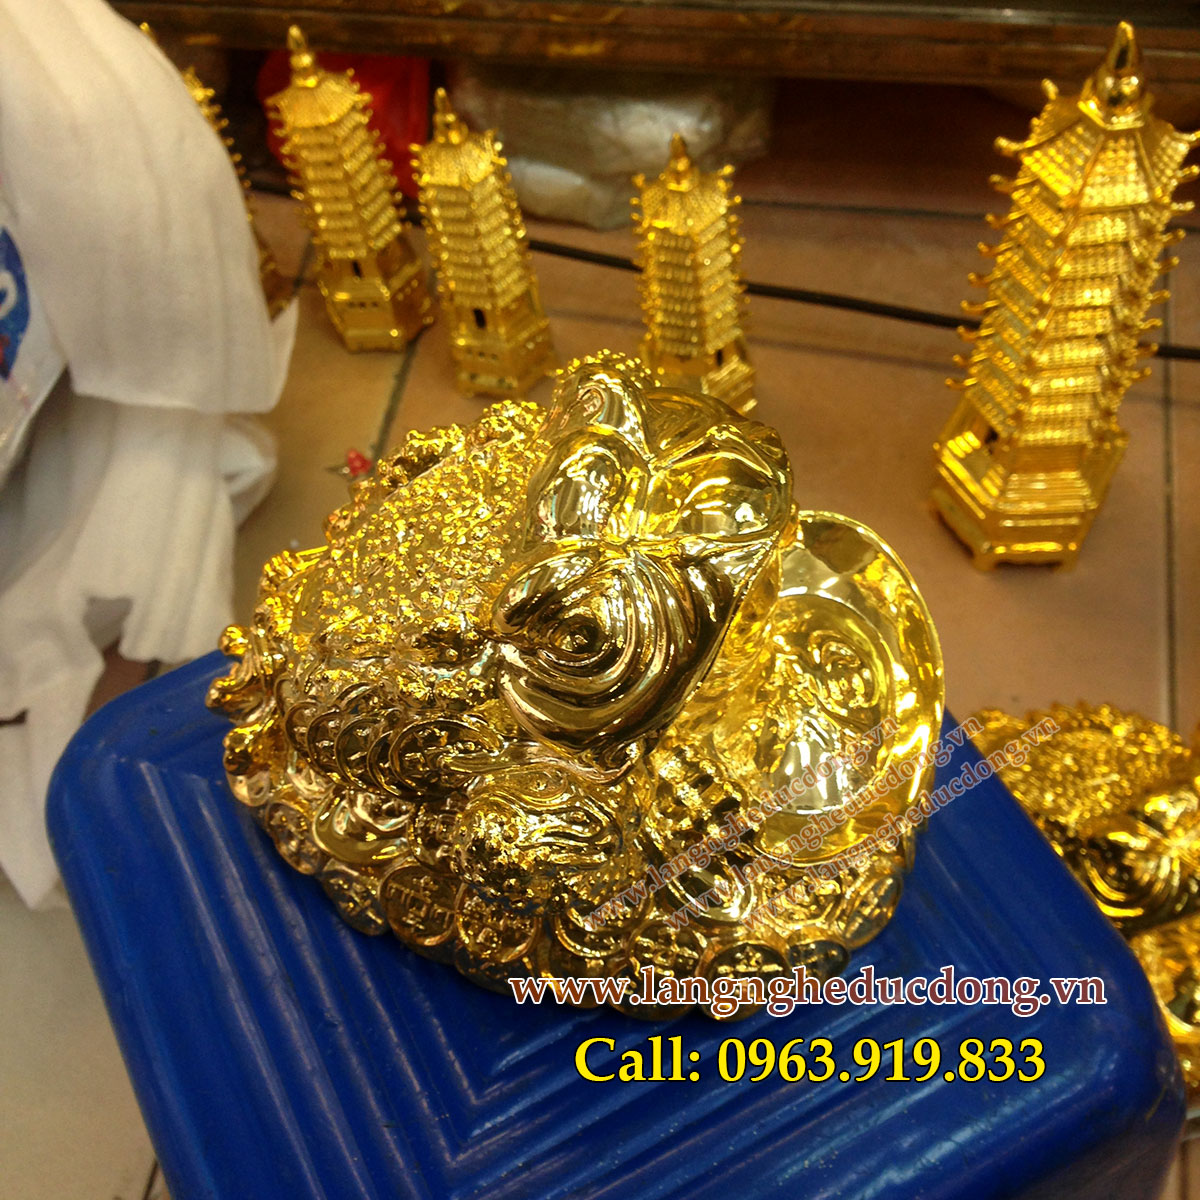 langngheducdong.vn - Cóc ba chân ngậm tiền phong thủy mạ vàng cao cấp cao 15cm